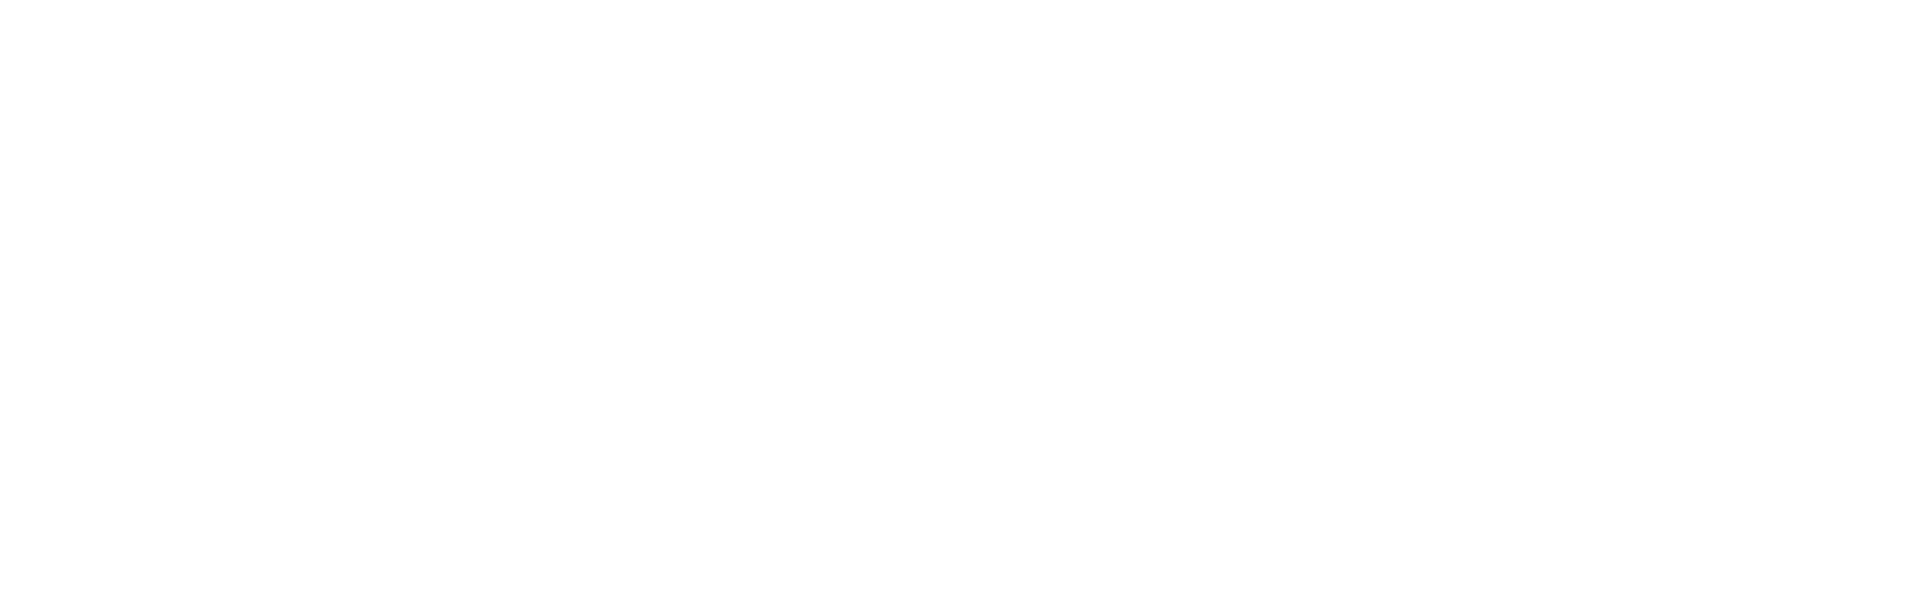 LCL-logo-2-white